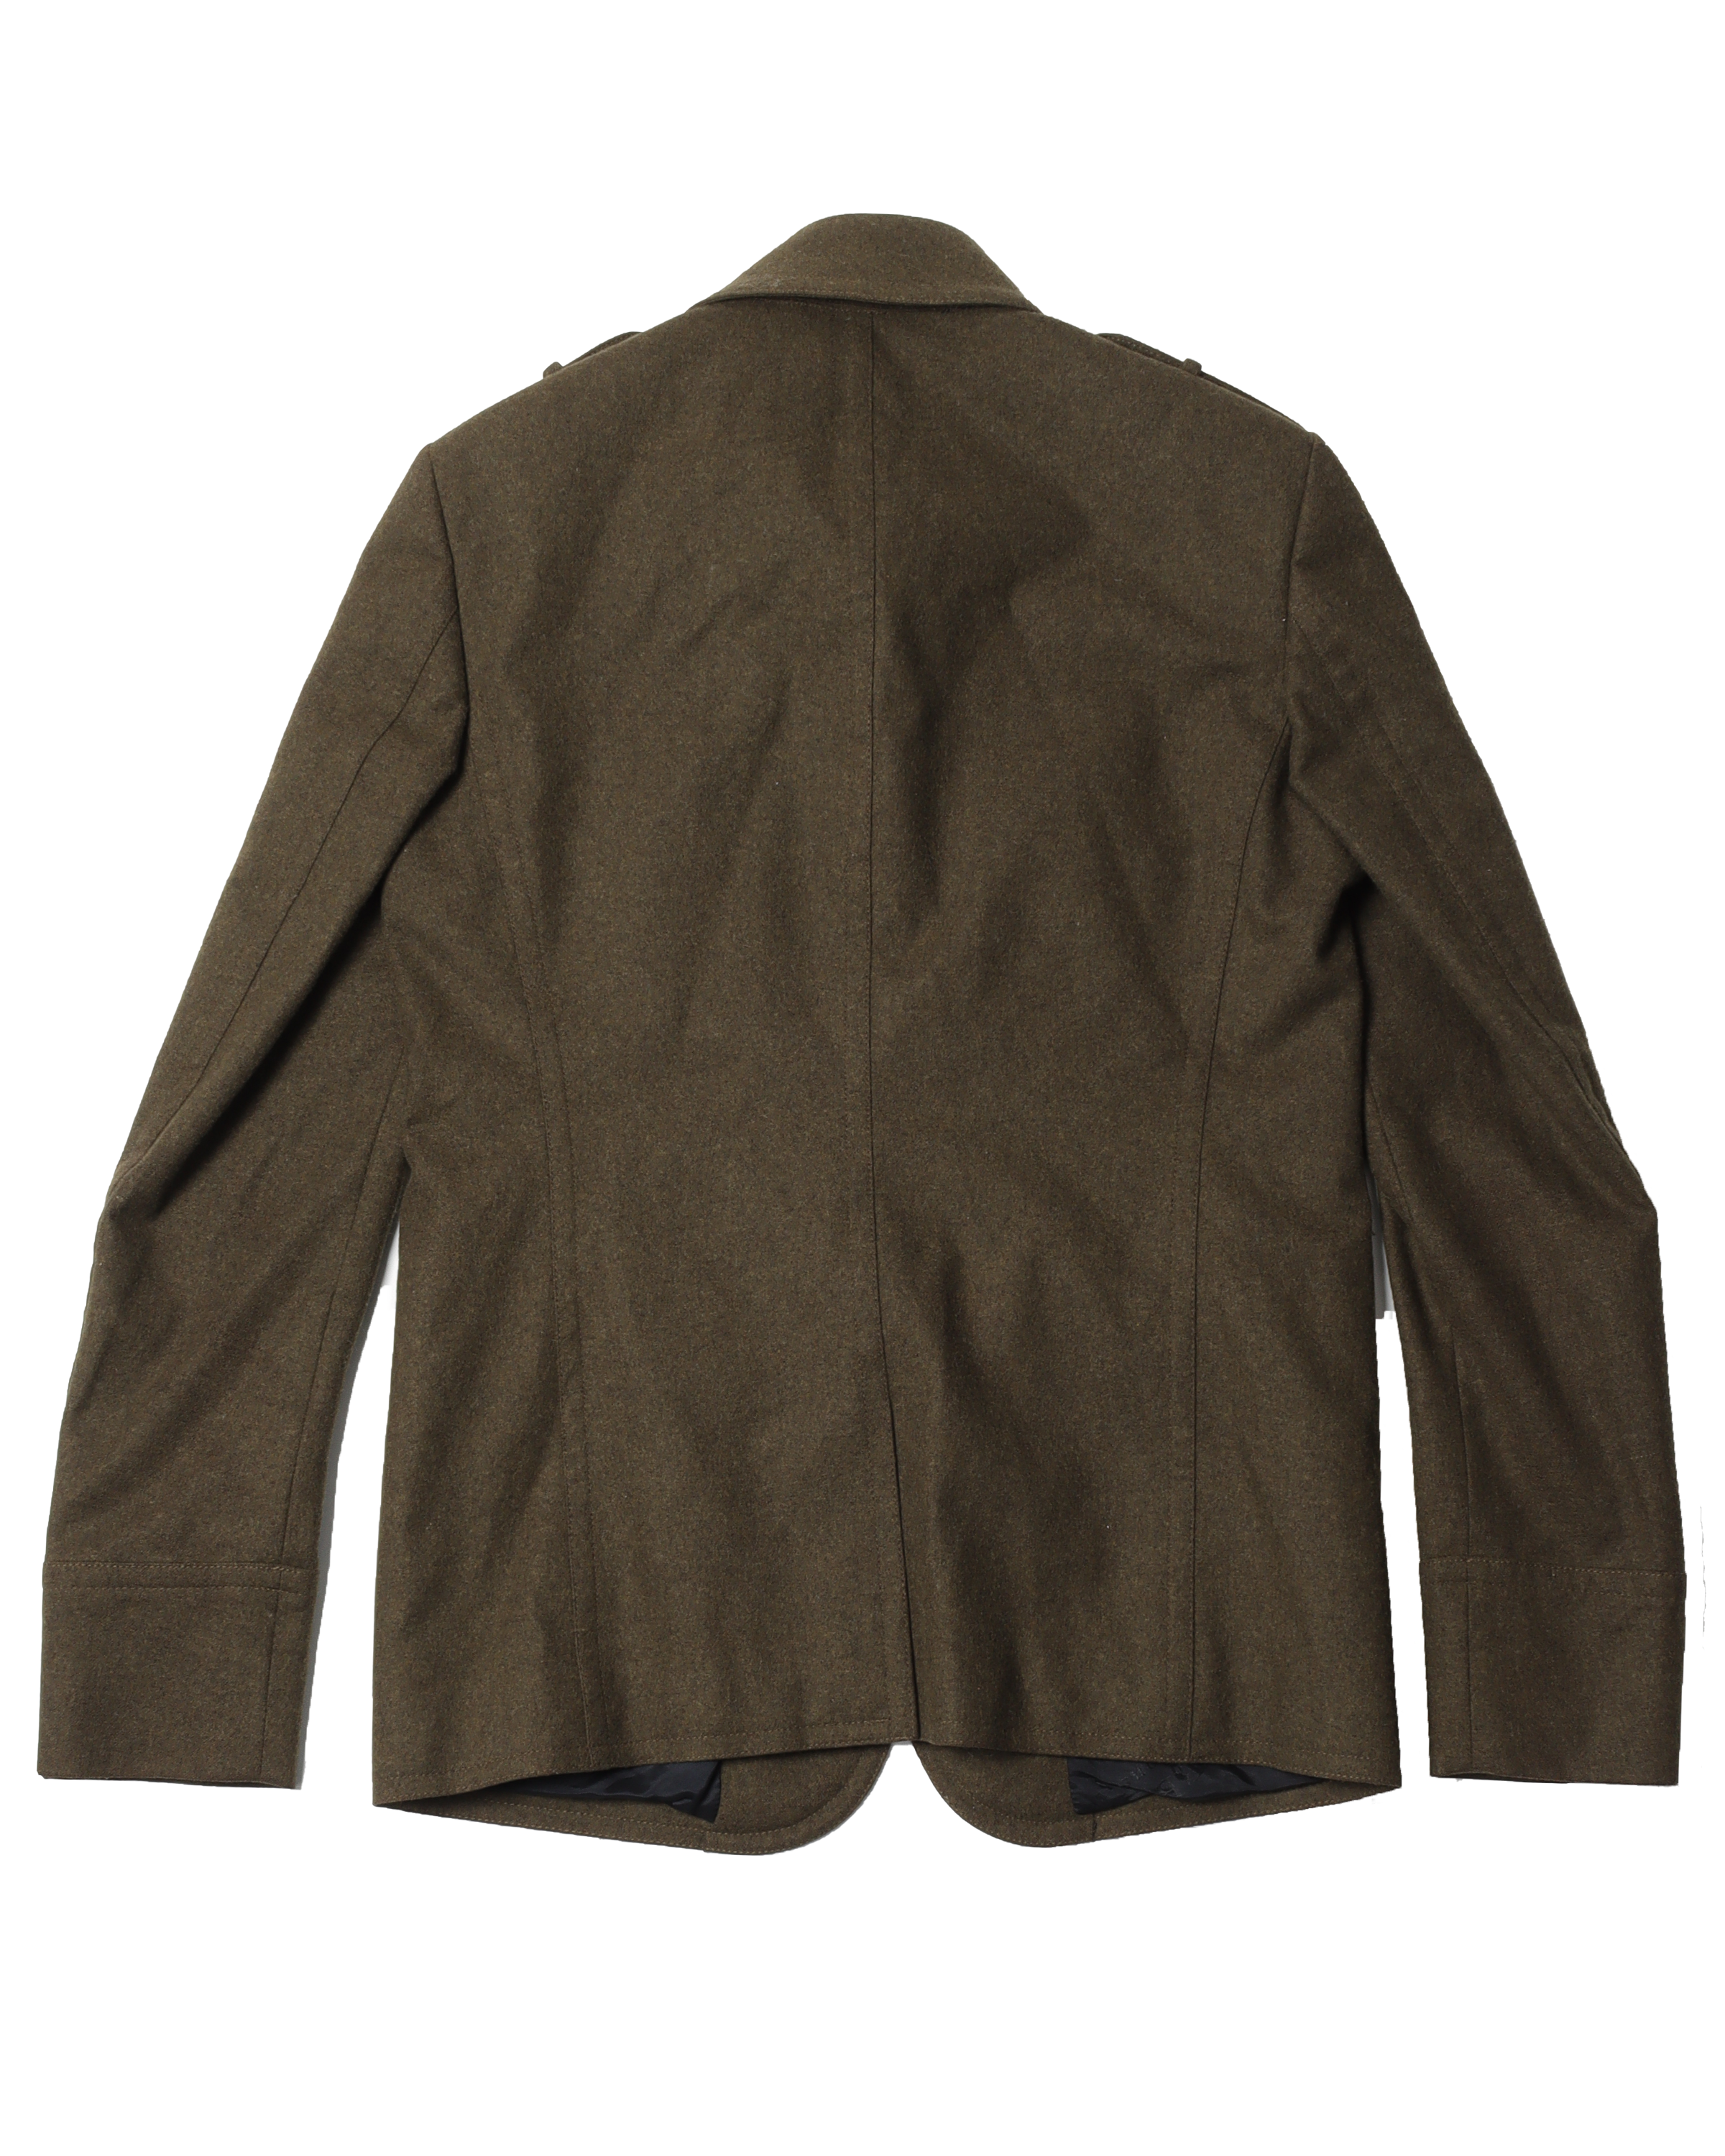 Olive Military Style Jacket